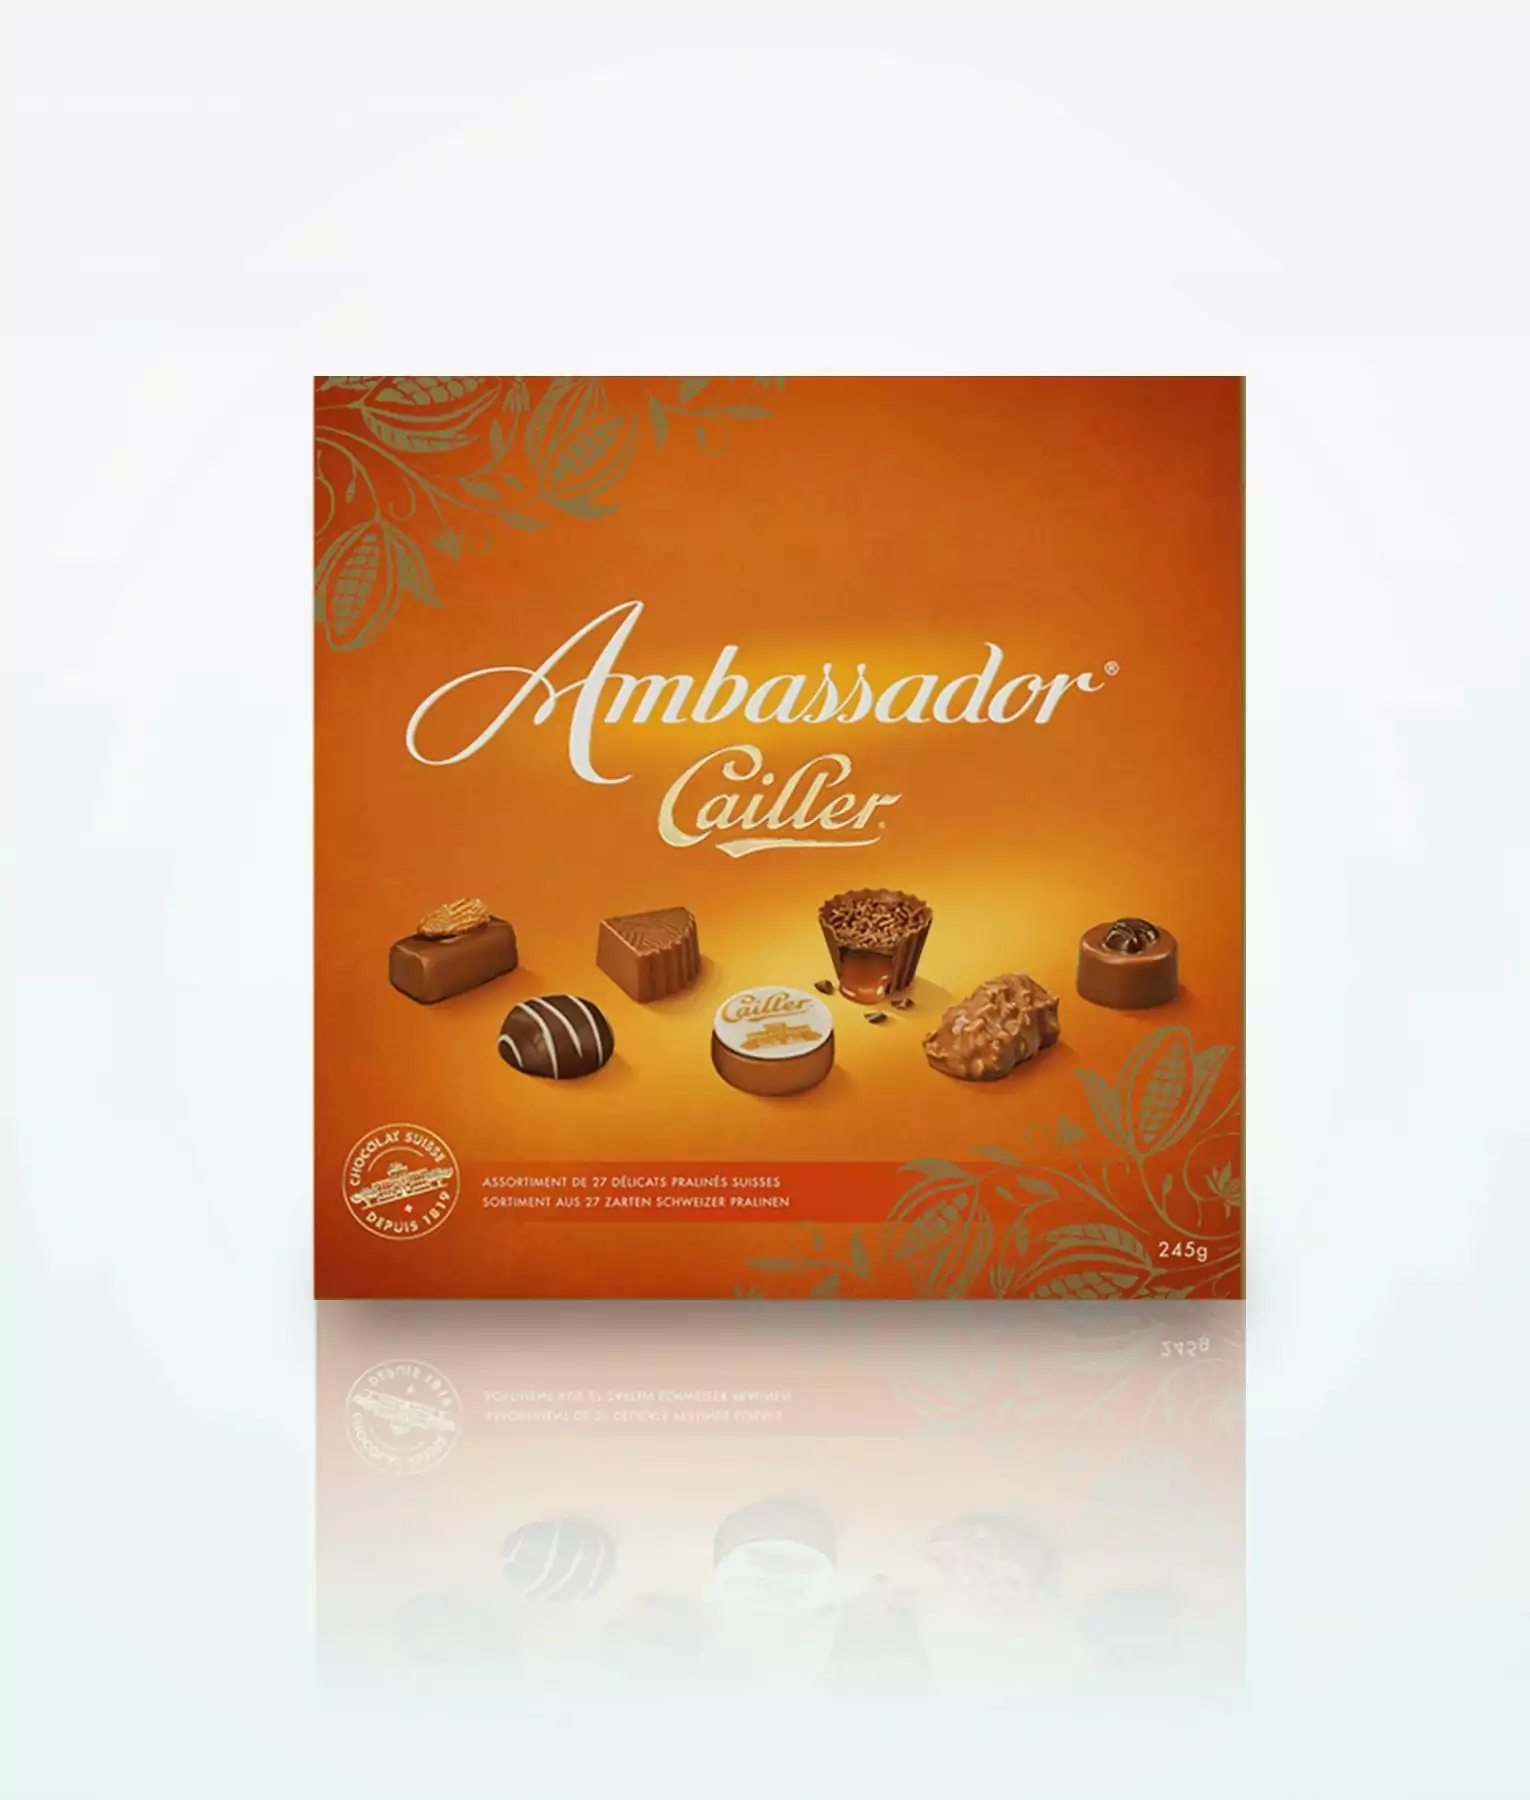 Schweizer schokolade cailler - Die hochwertigsten Schweizer schokolade cailler auf einen Blick